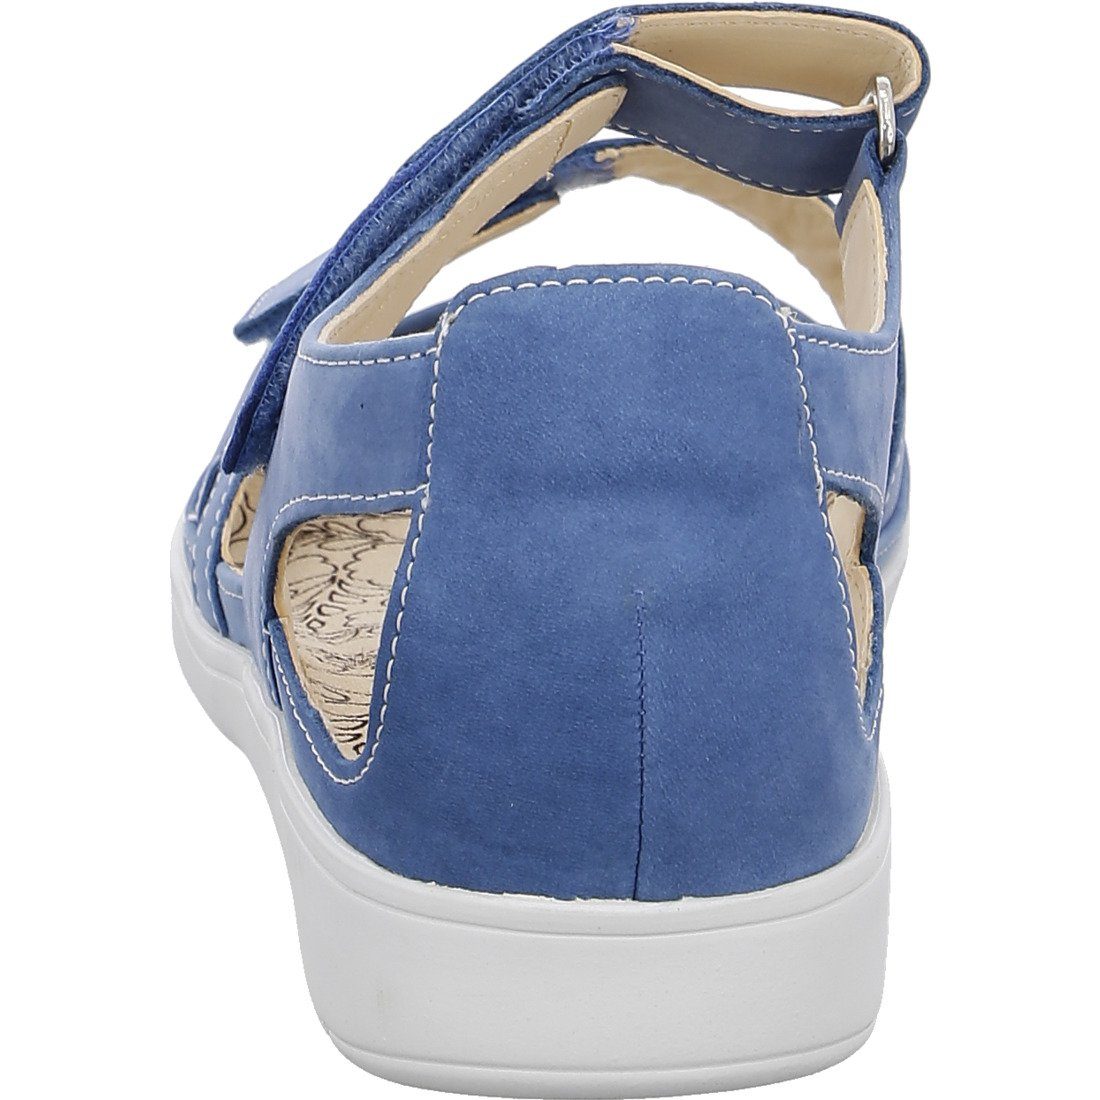 Ganter Ganter Schuhe, Sandalette blau Damen Sandalette 048805 - Leder Gina